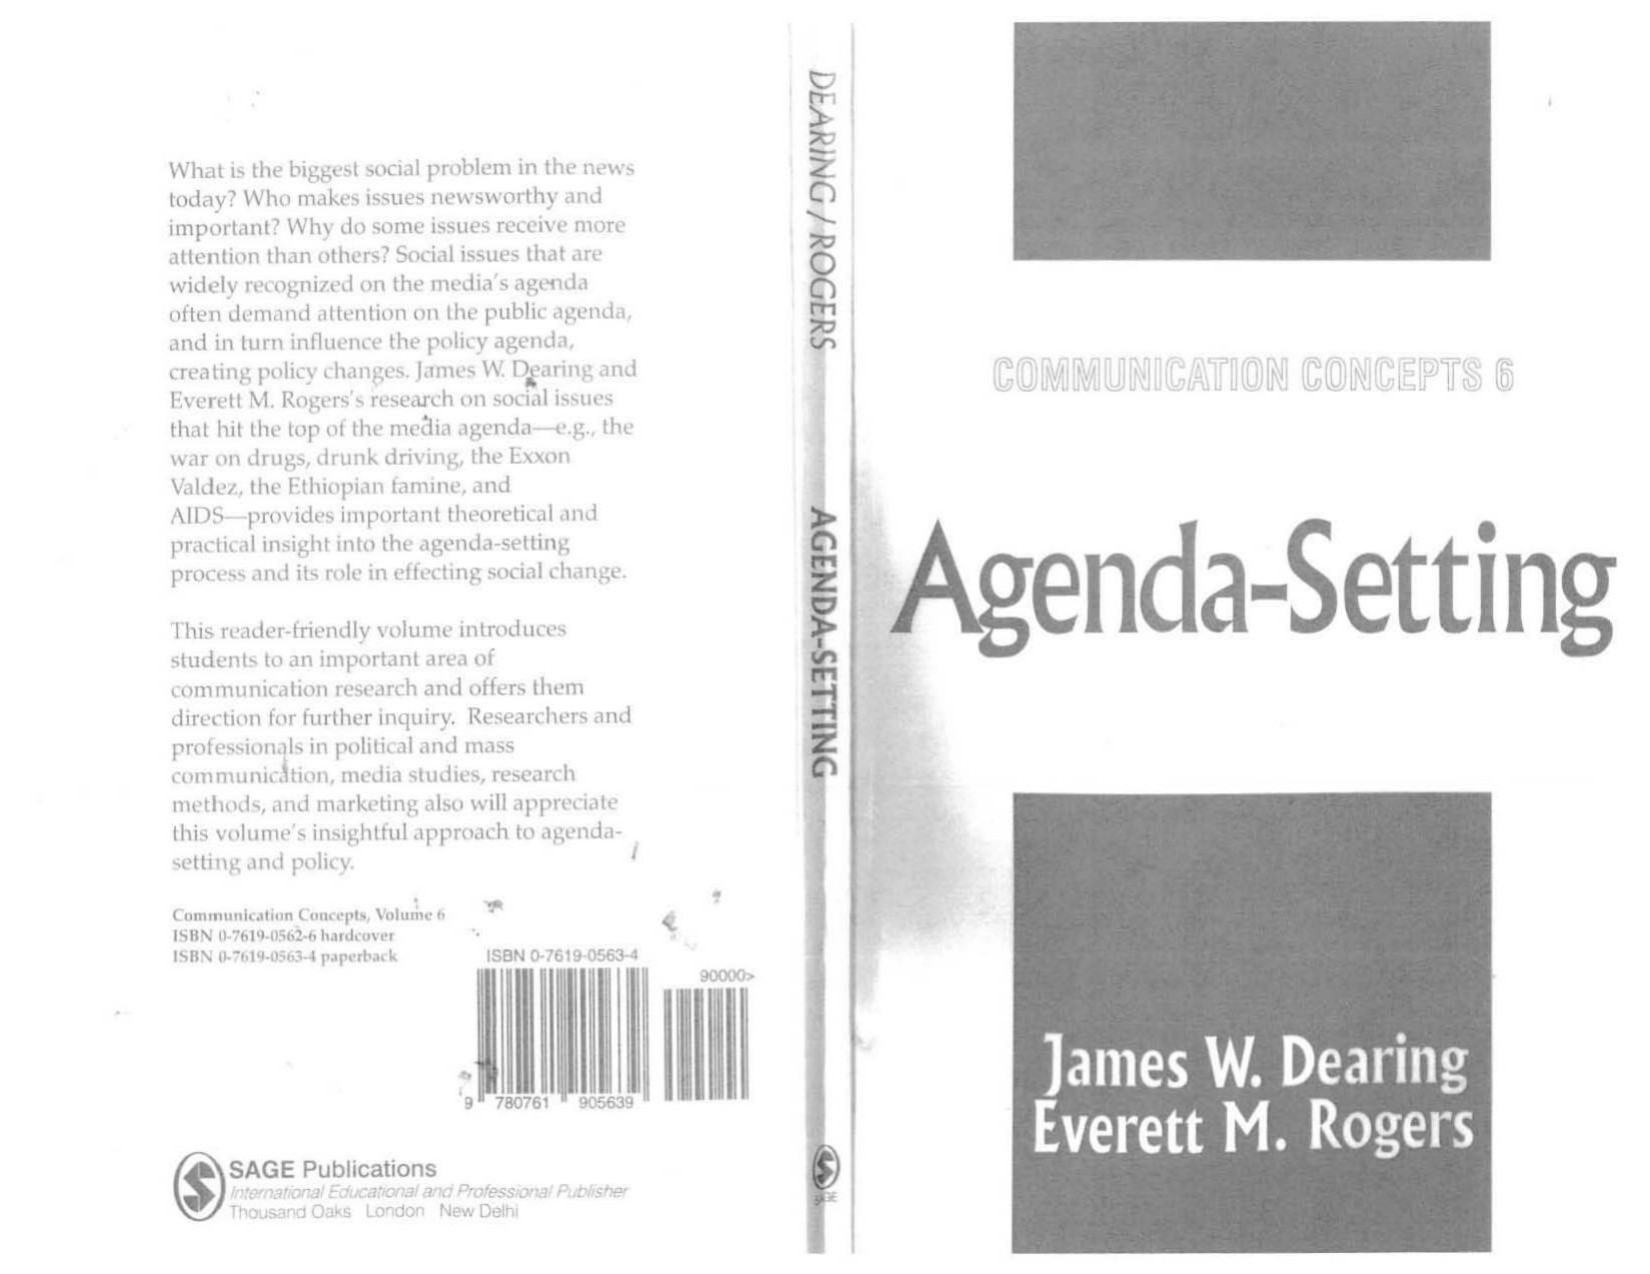 [James W. Dearing, Everett M. Rogers] Agenda-Setti 1996